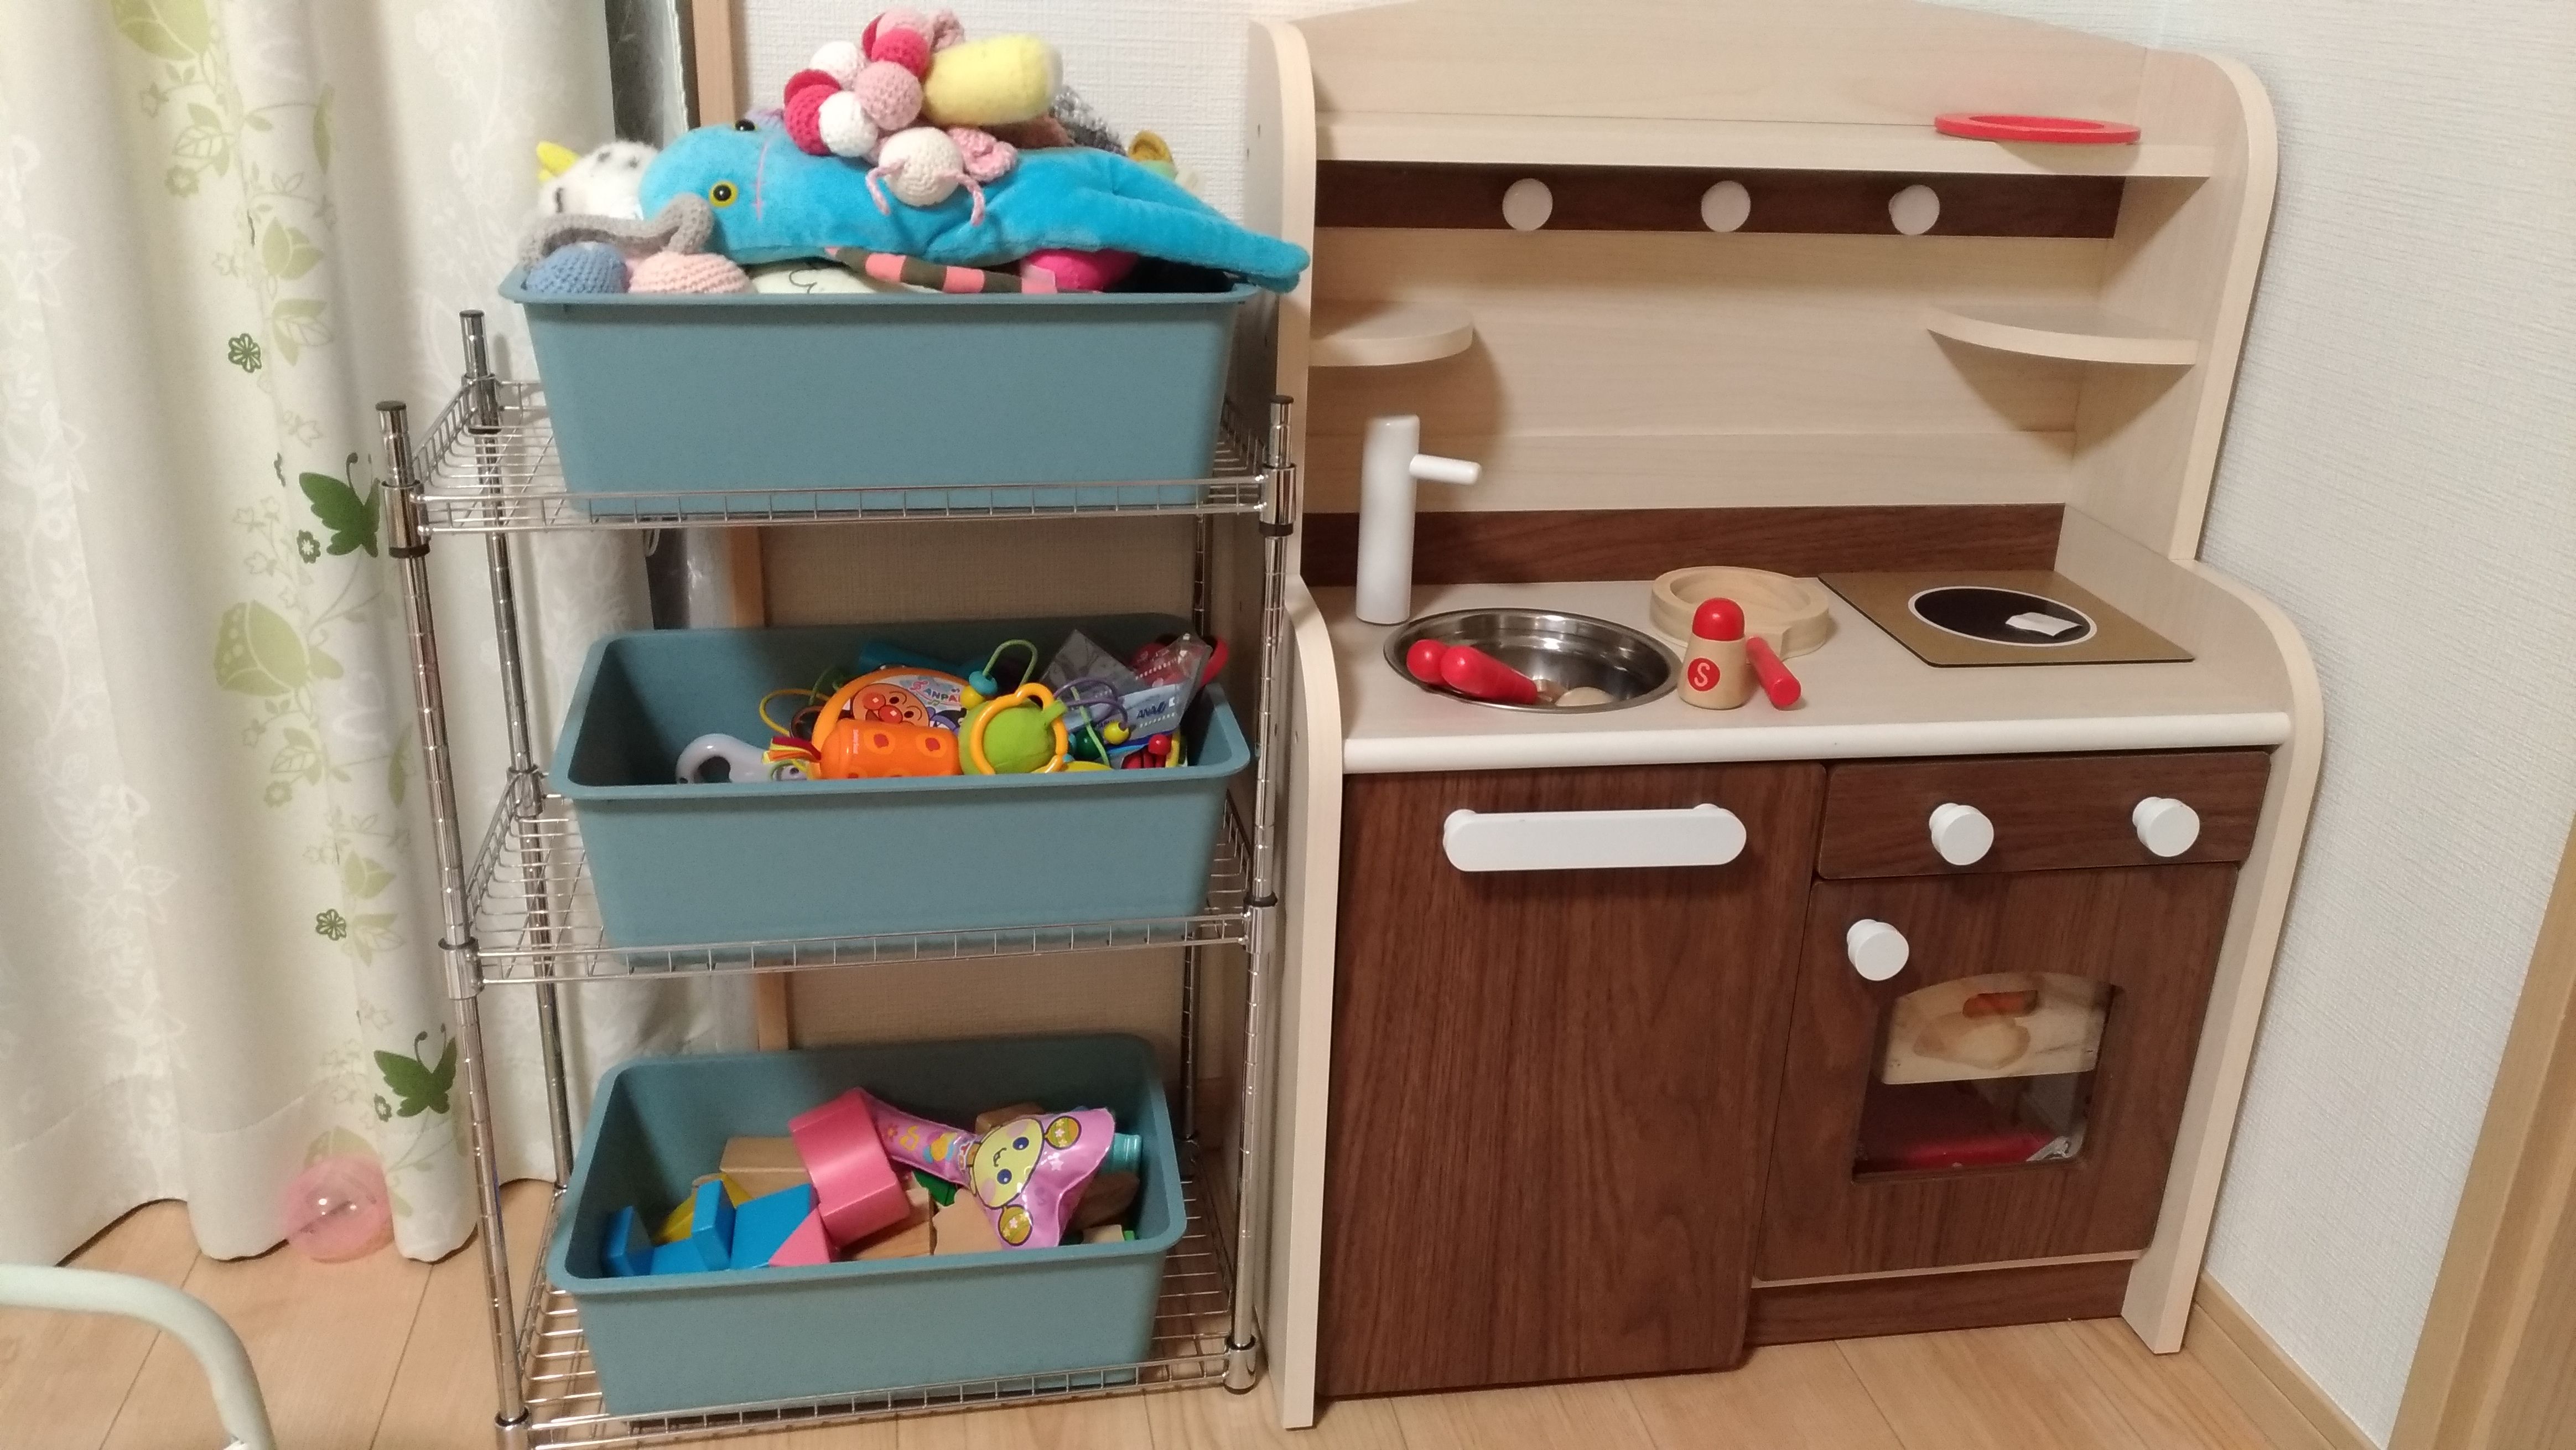 ままごとキッチン組み立てandおもちゃ棚diy Miomama編み物日記 楽天ブログ